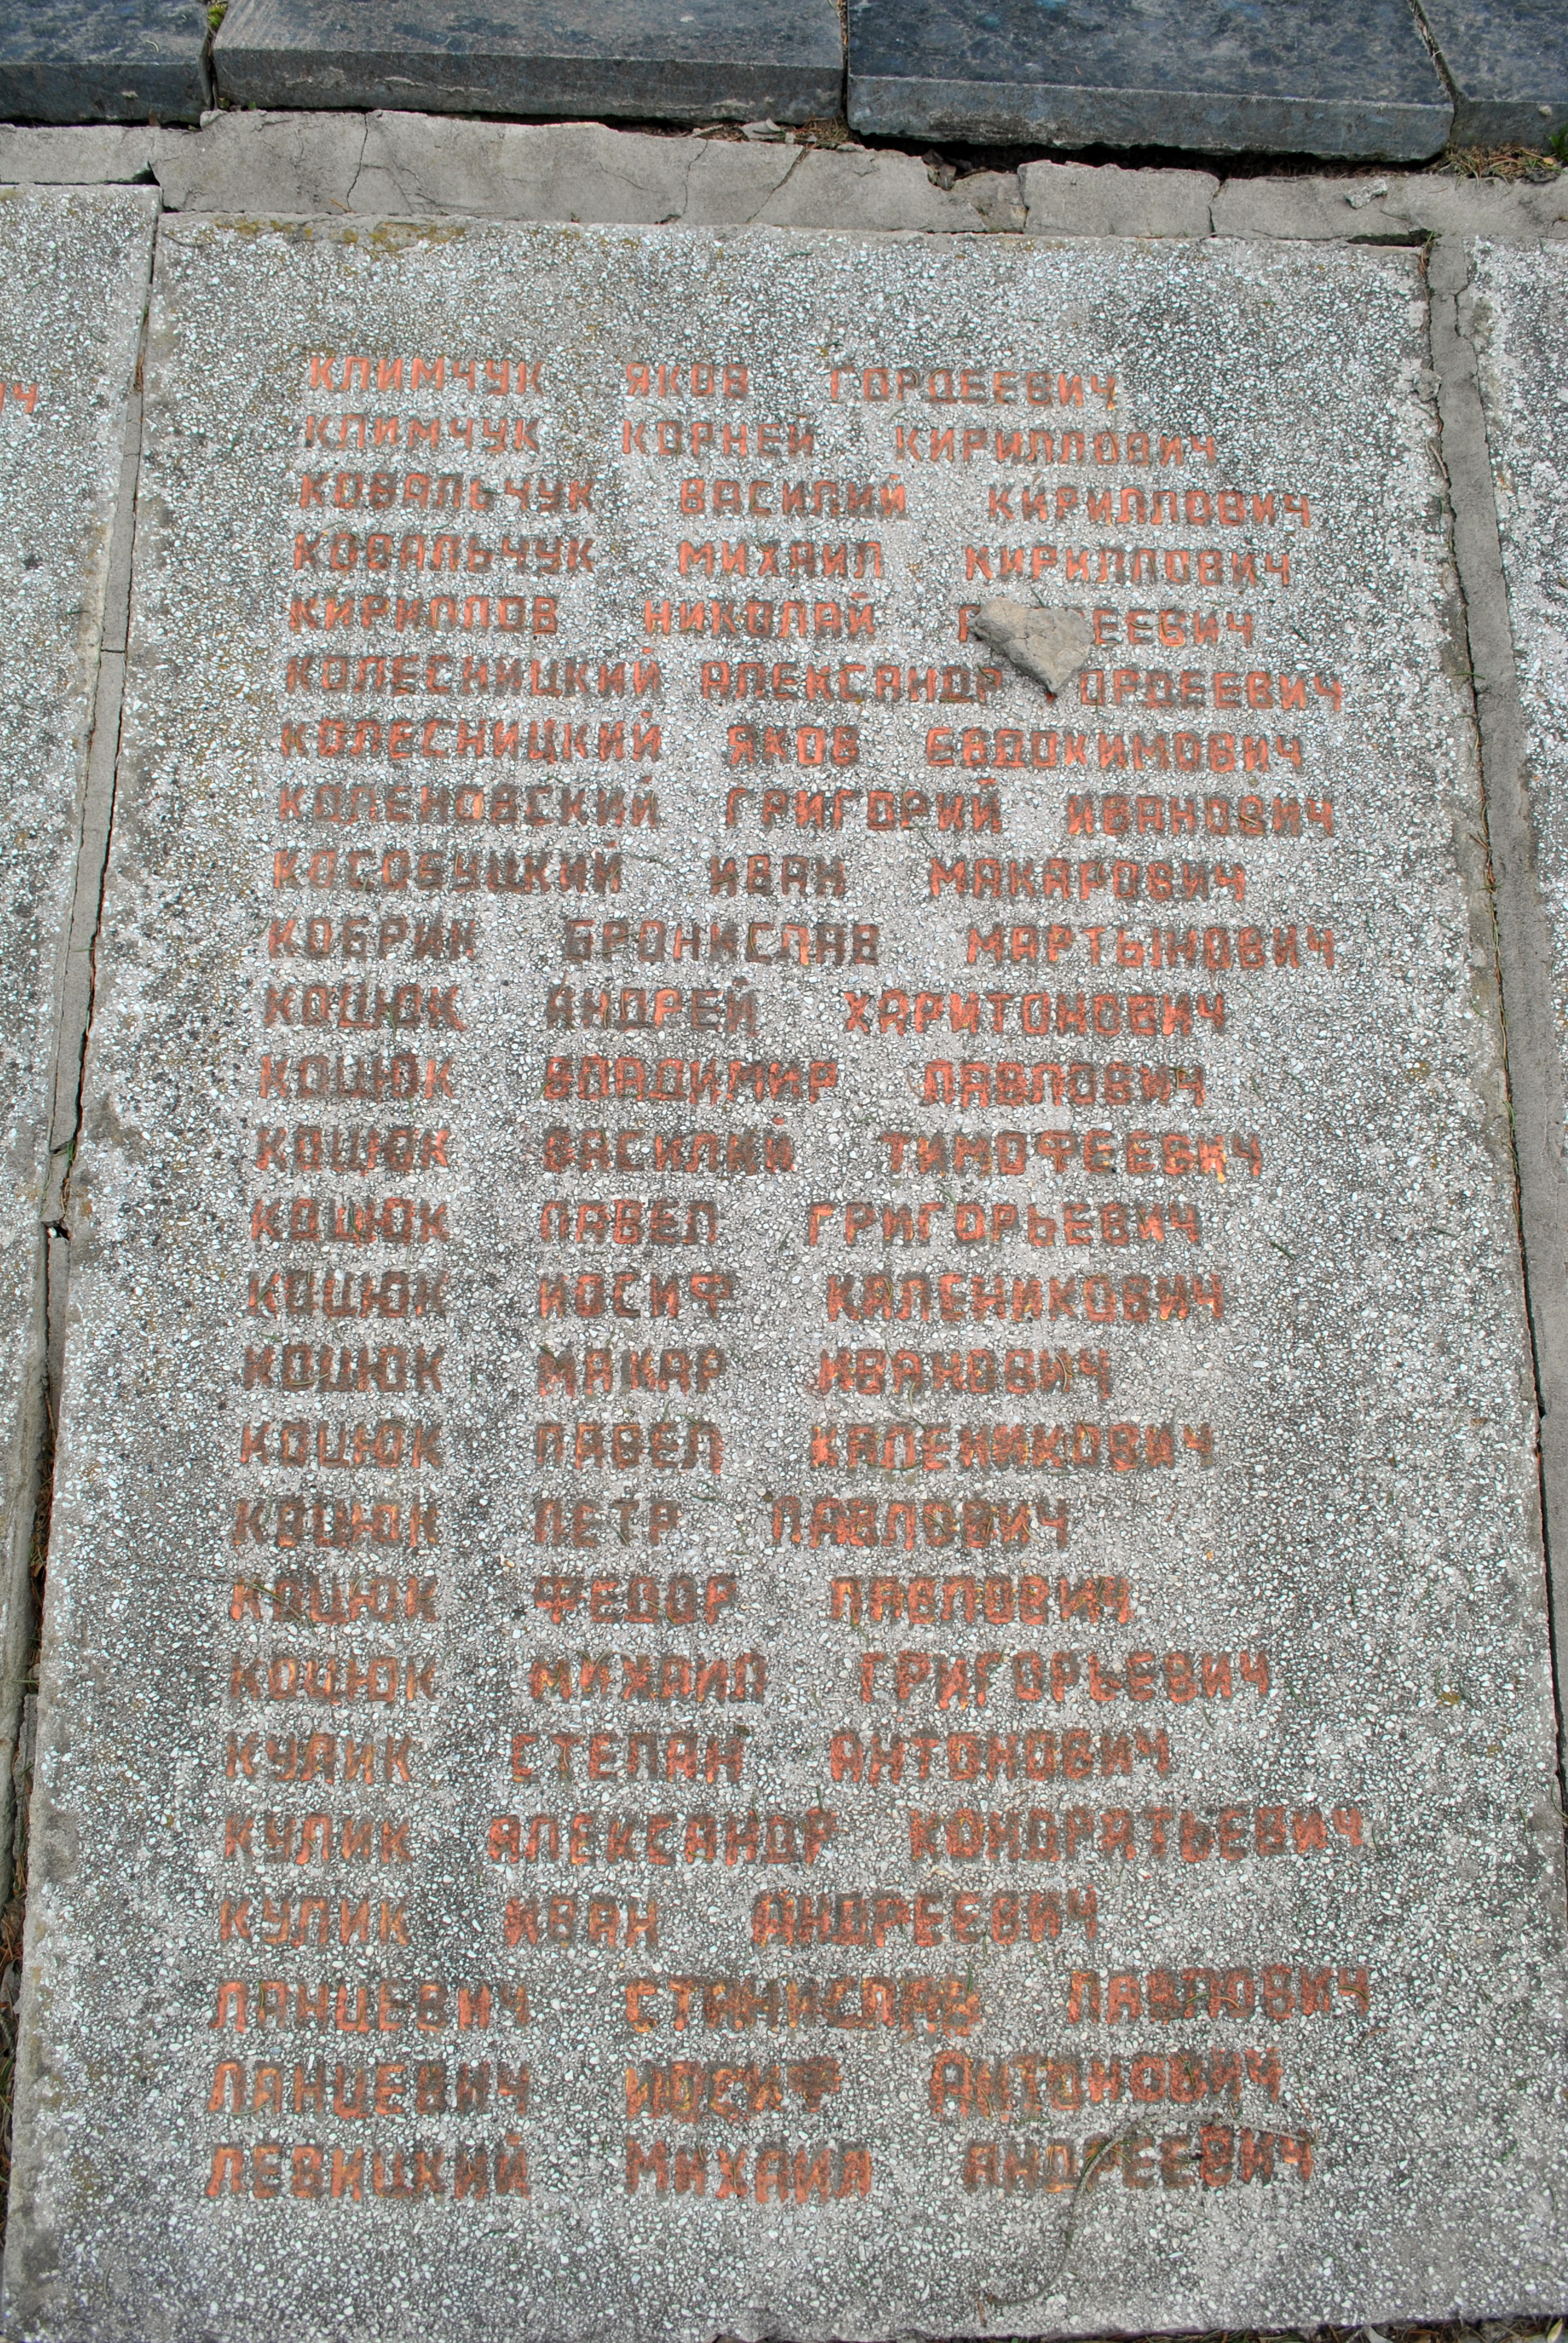 Братская могила в с. Городовка Андрушевского района